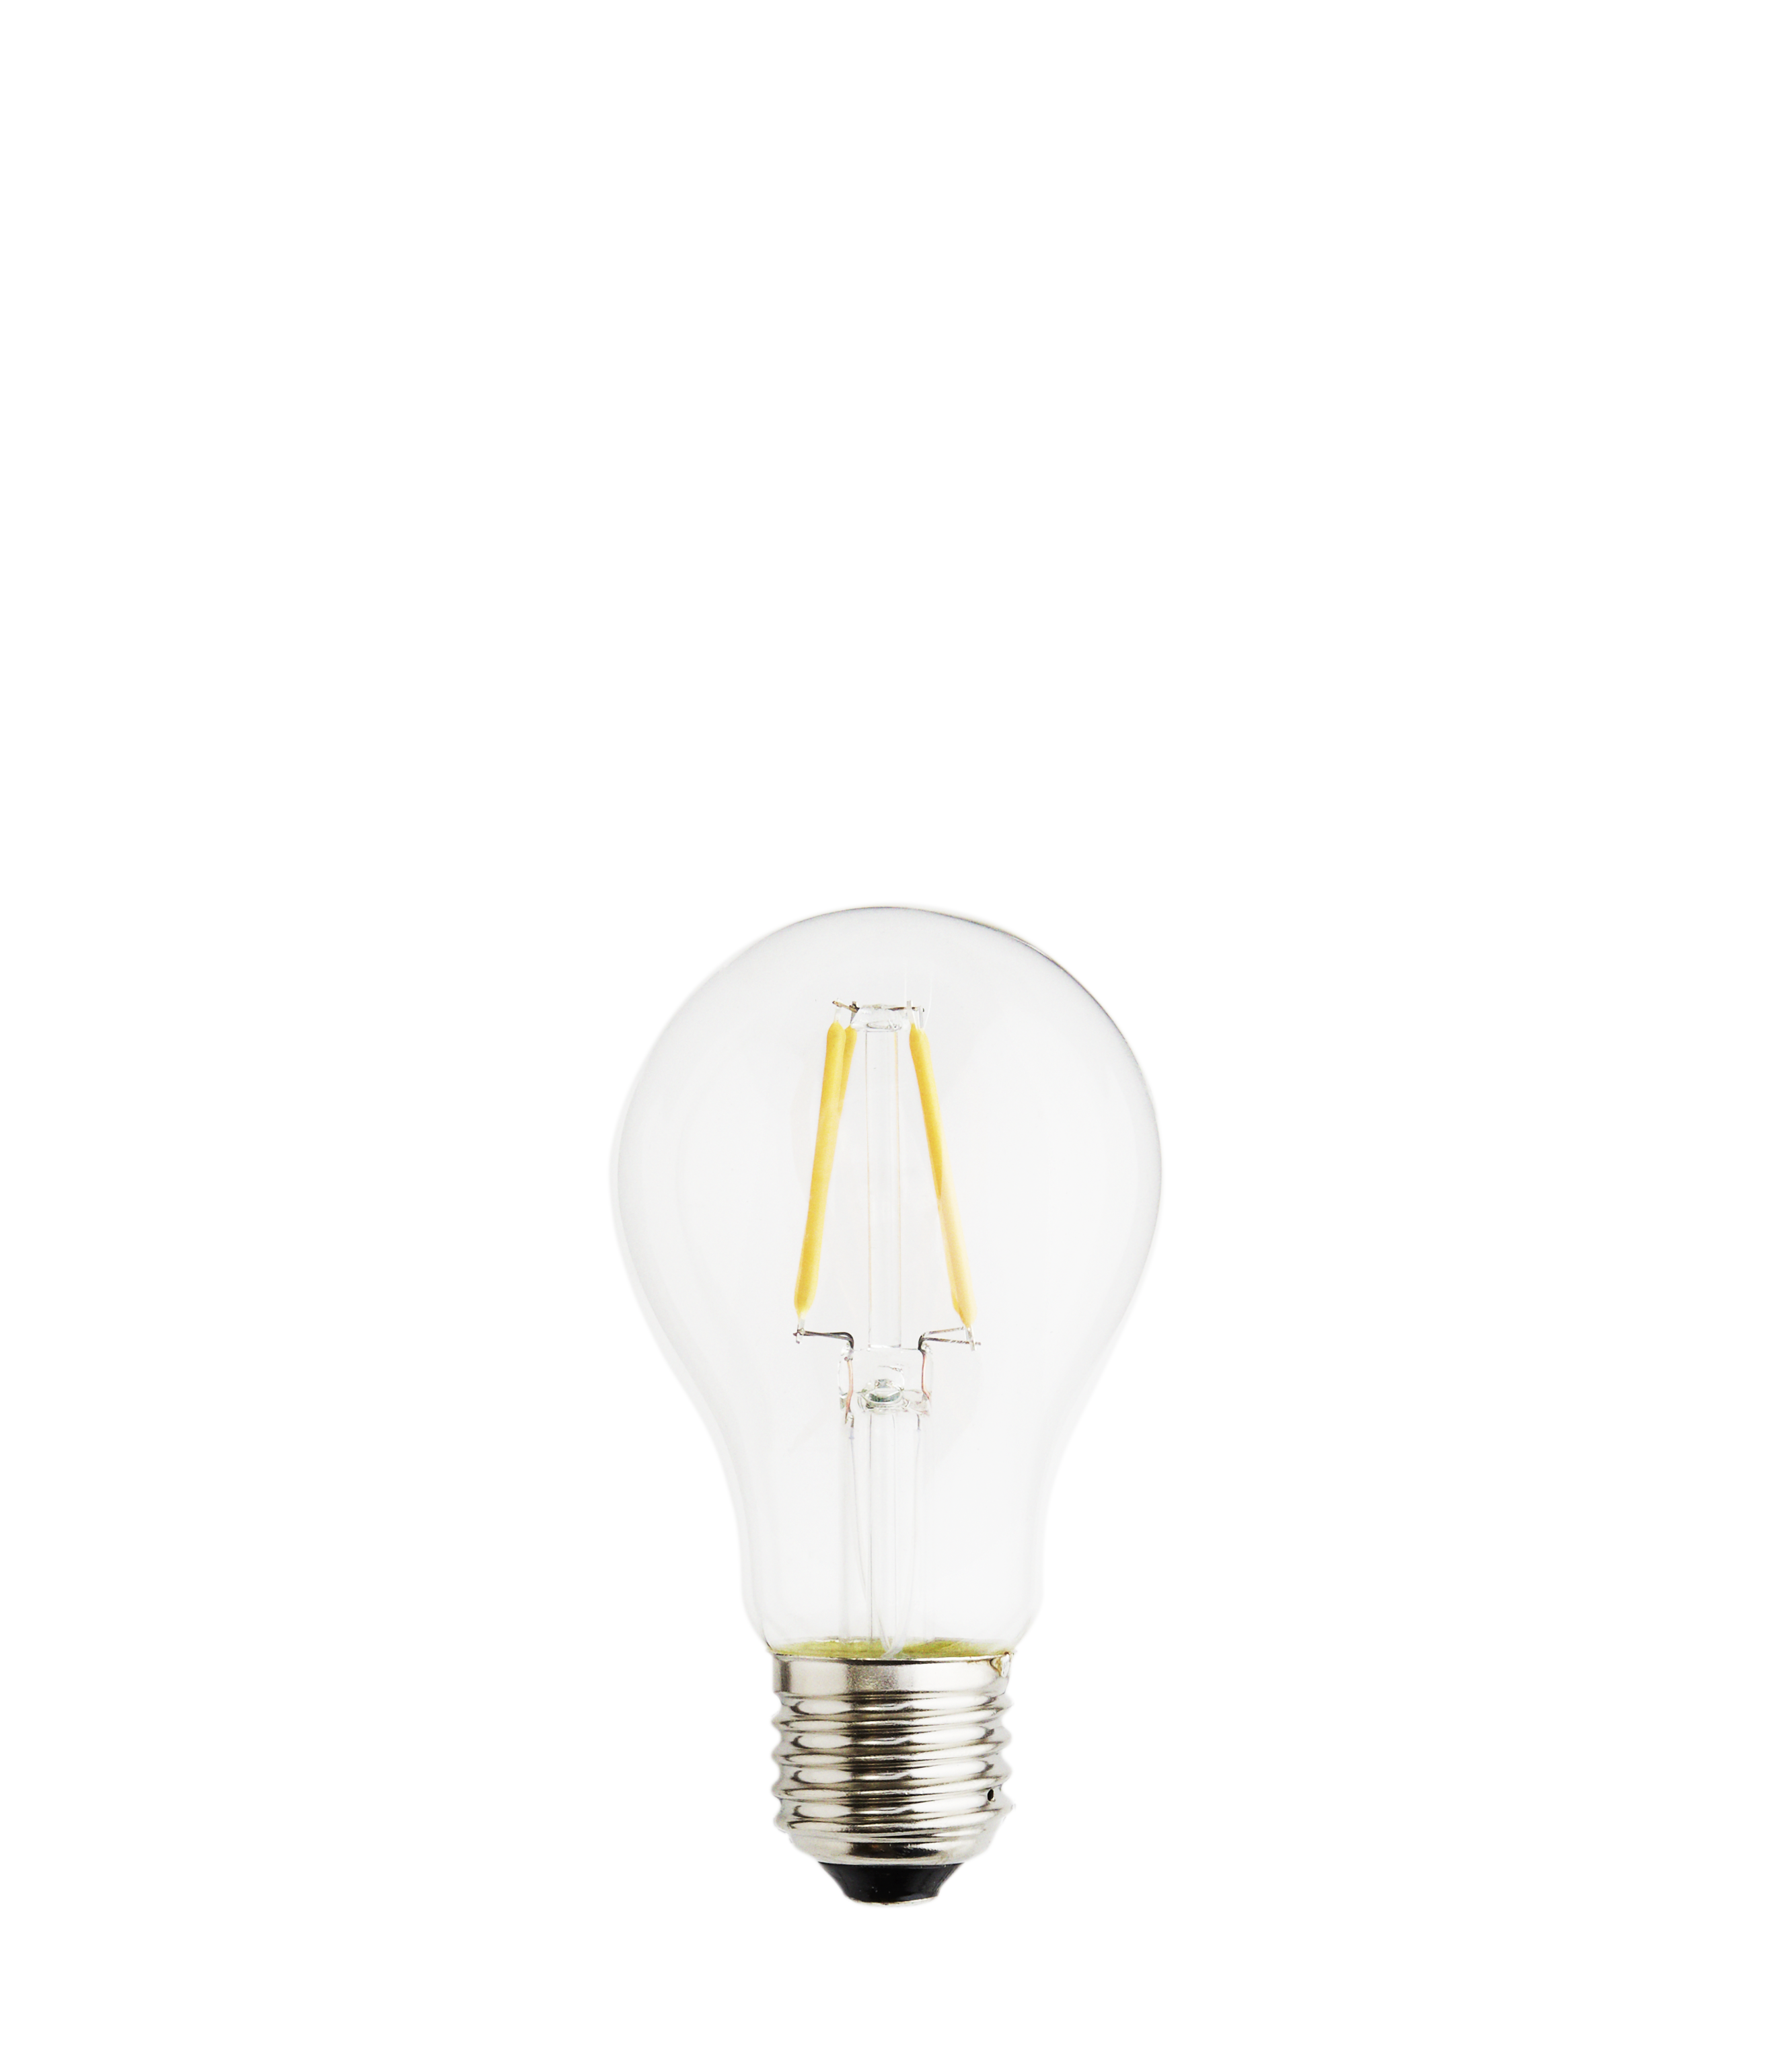 LED Lampe E27 4W Ø 6cm Silber